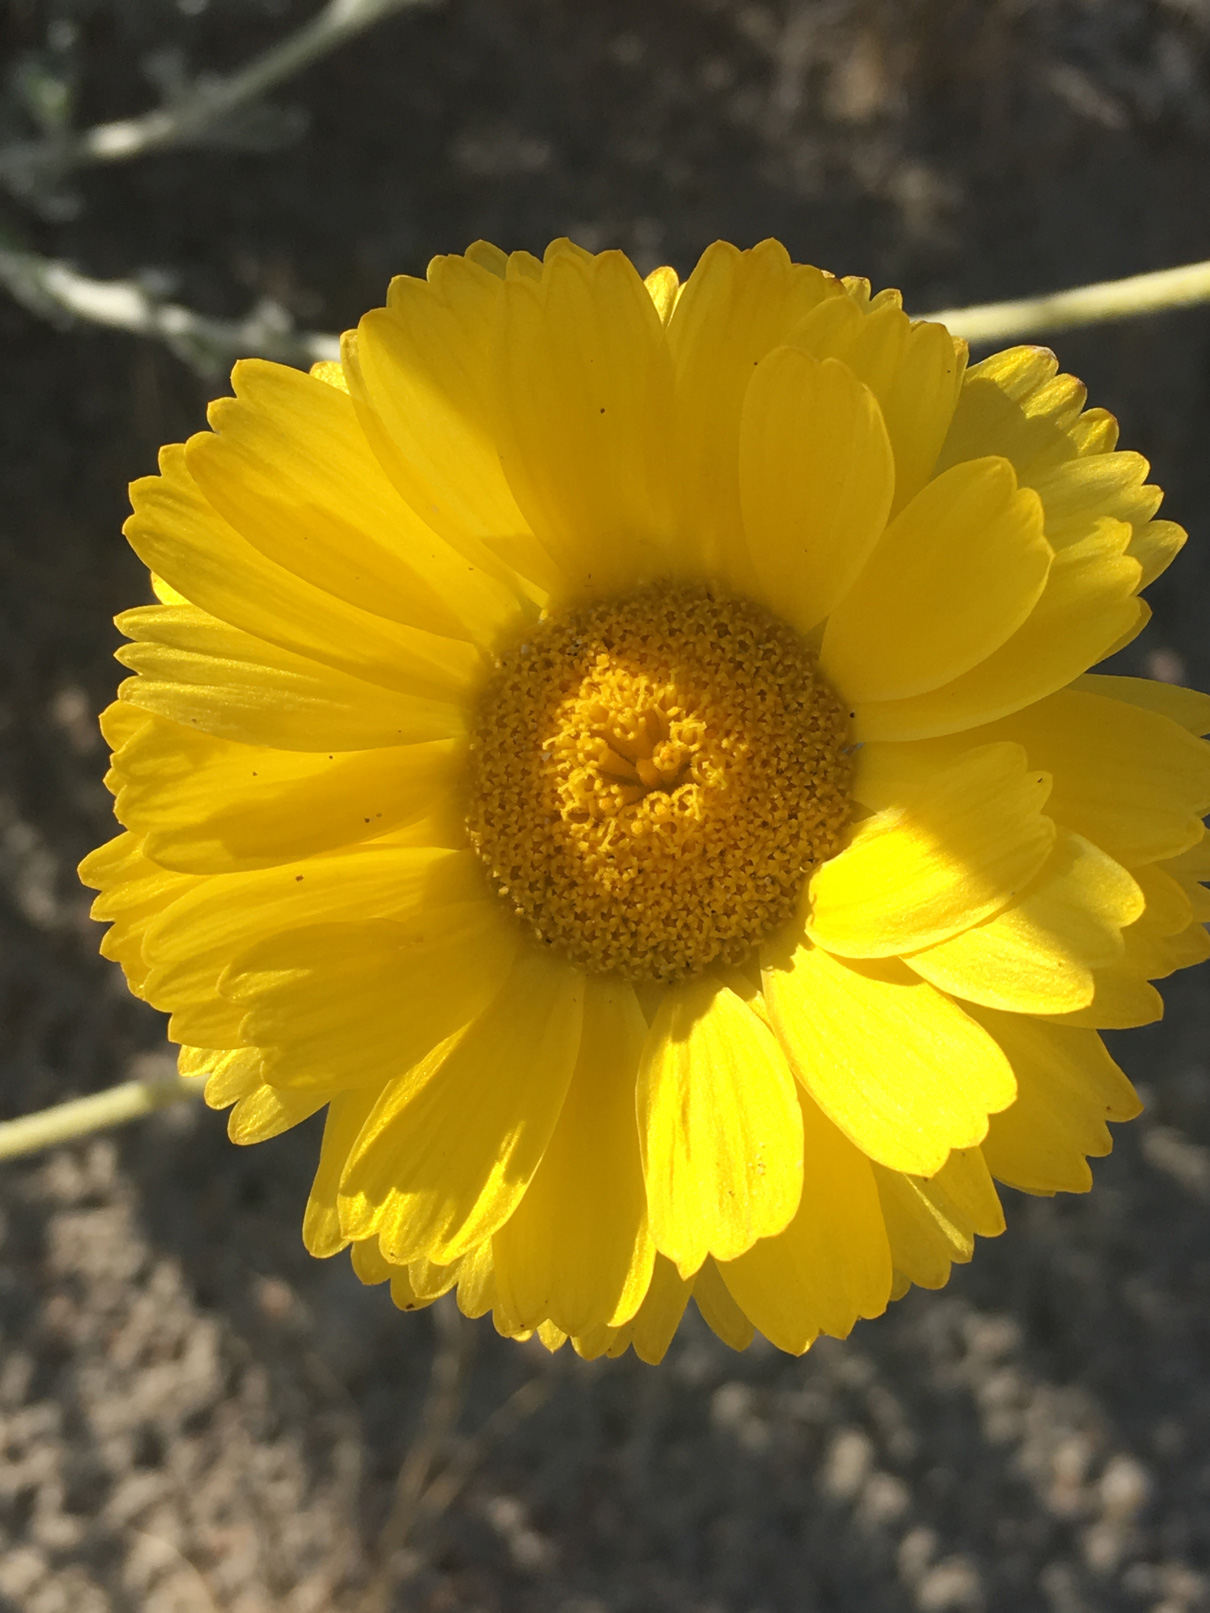 A close-up of a Desert Marigold flower.